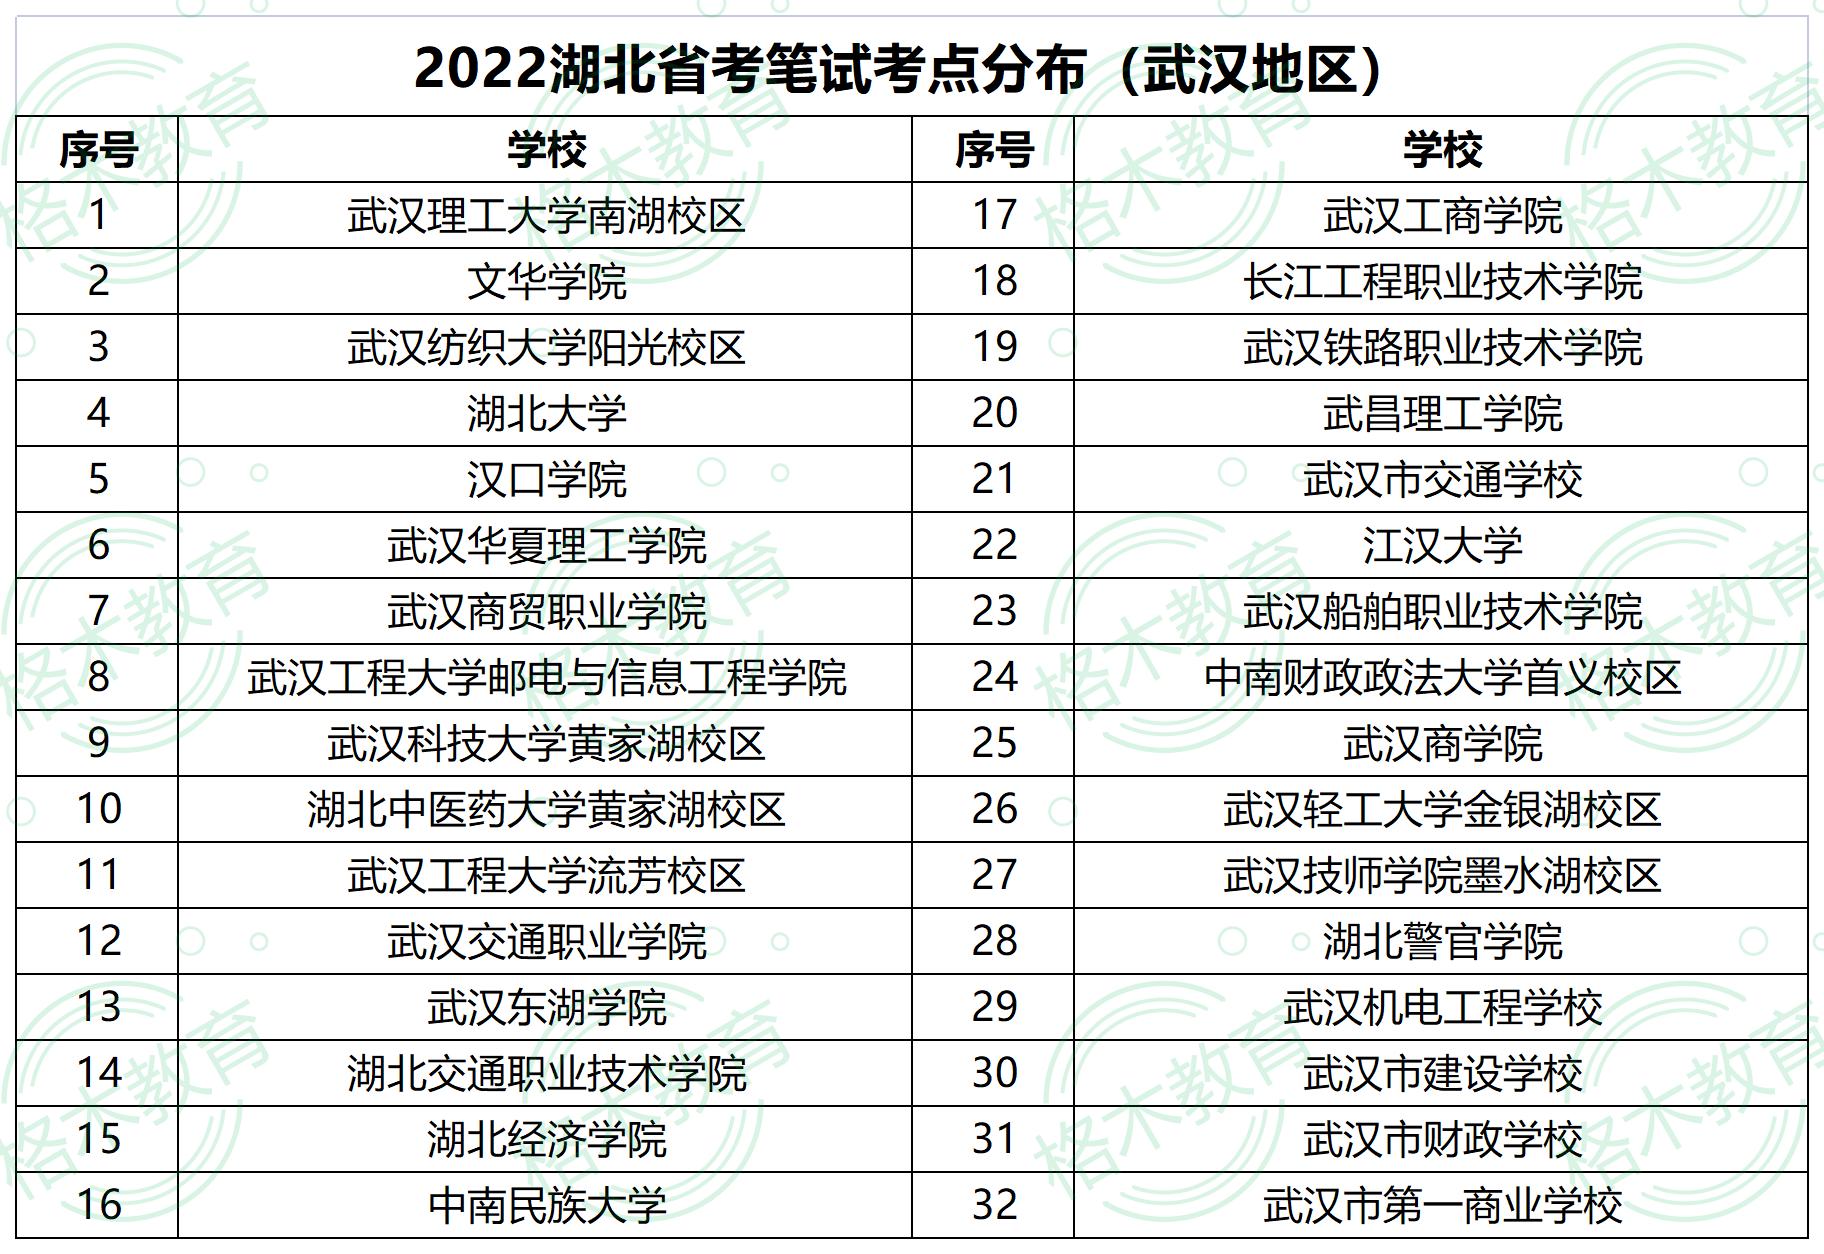 2022年湖北省武汉公务员考试考场分布图—武汉商贸职业技术学院